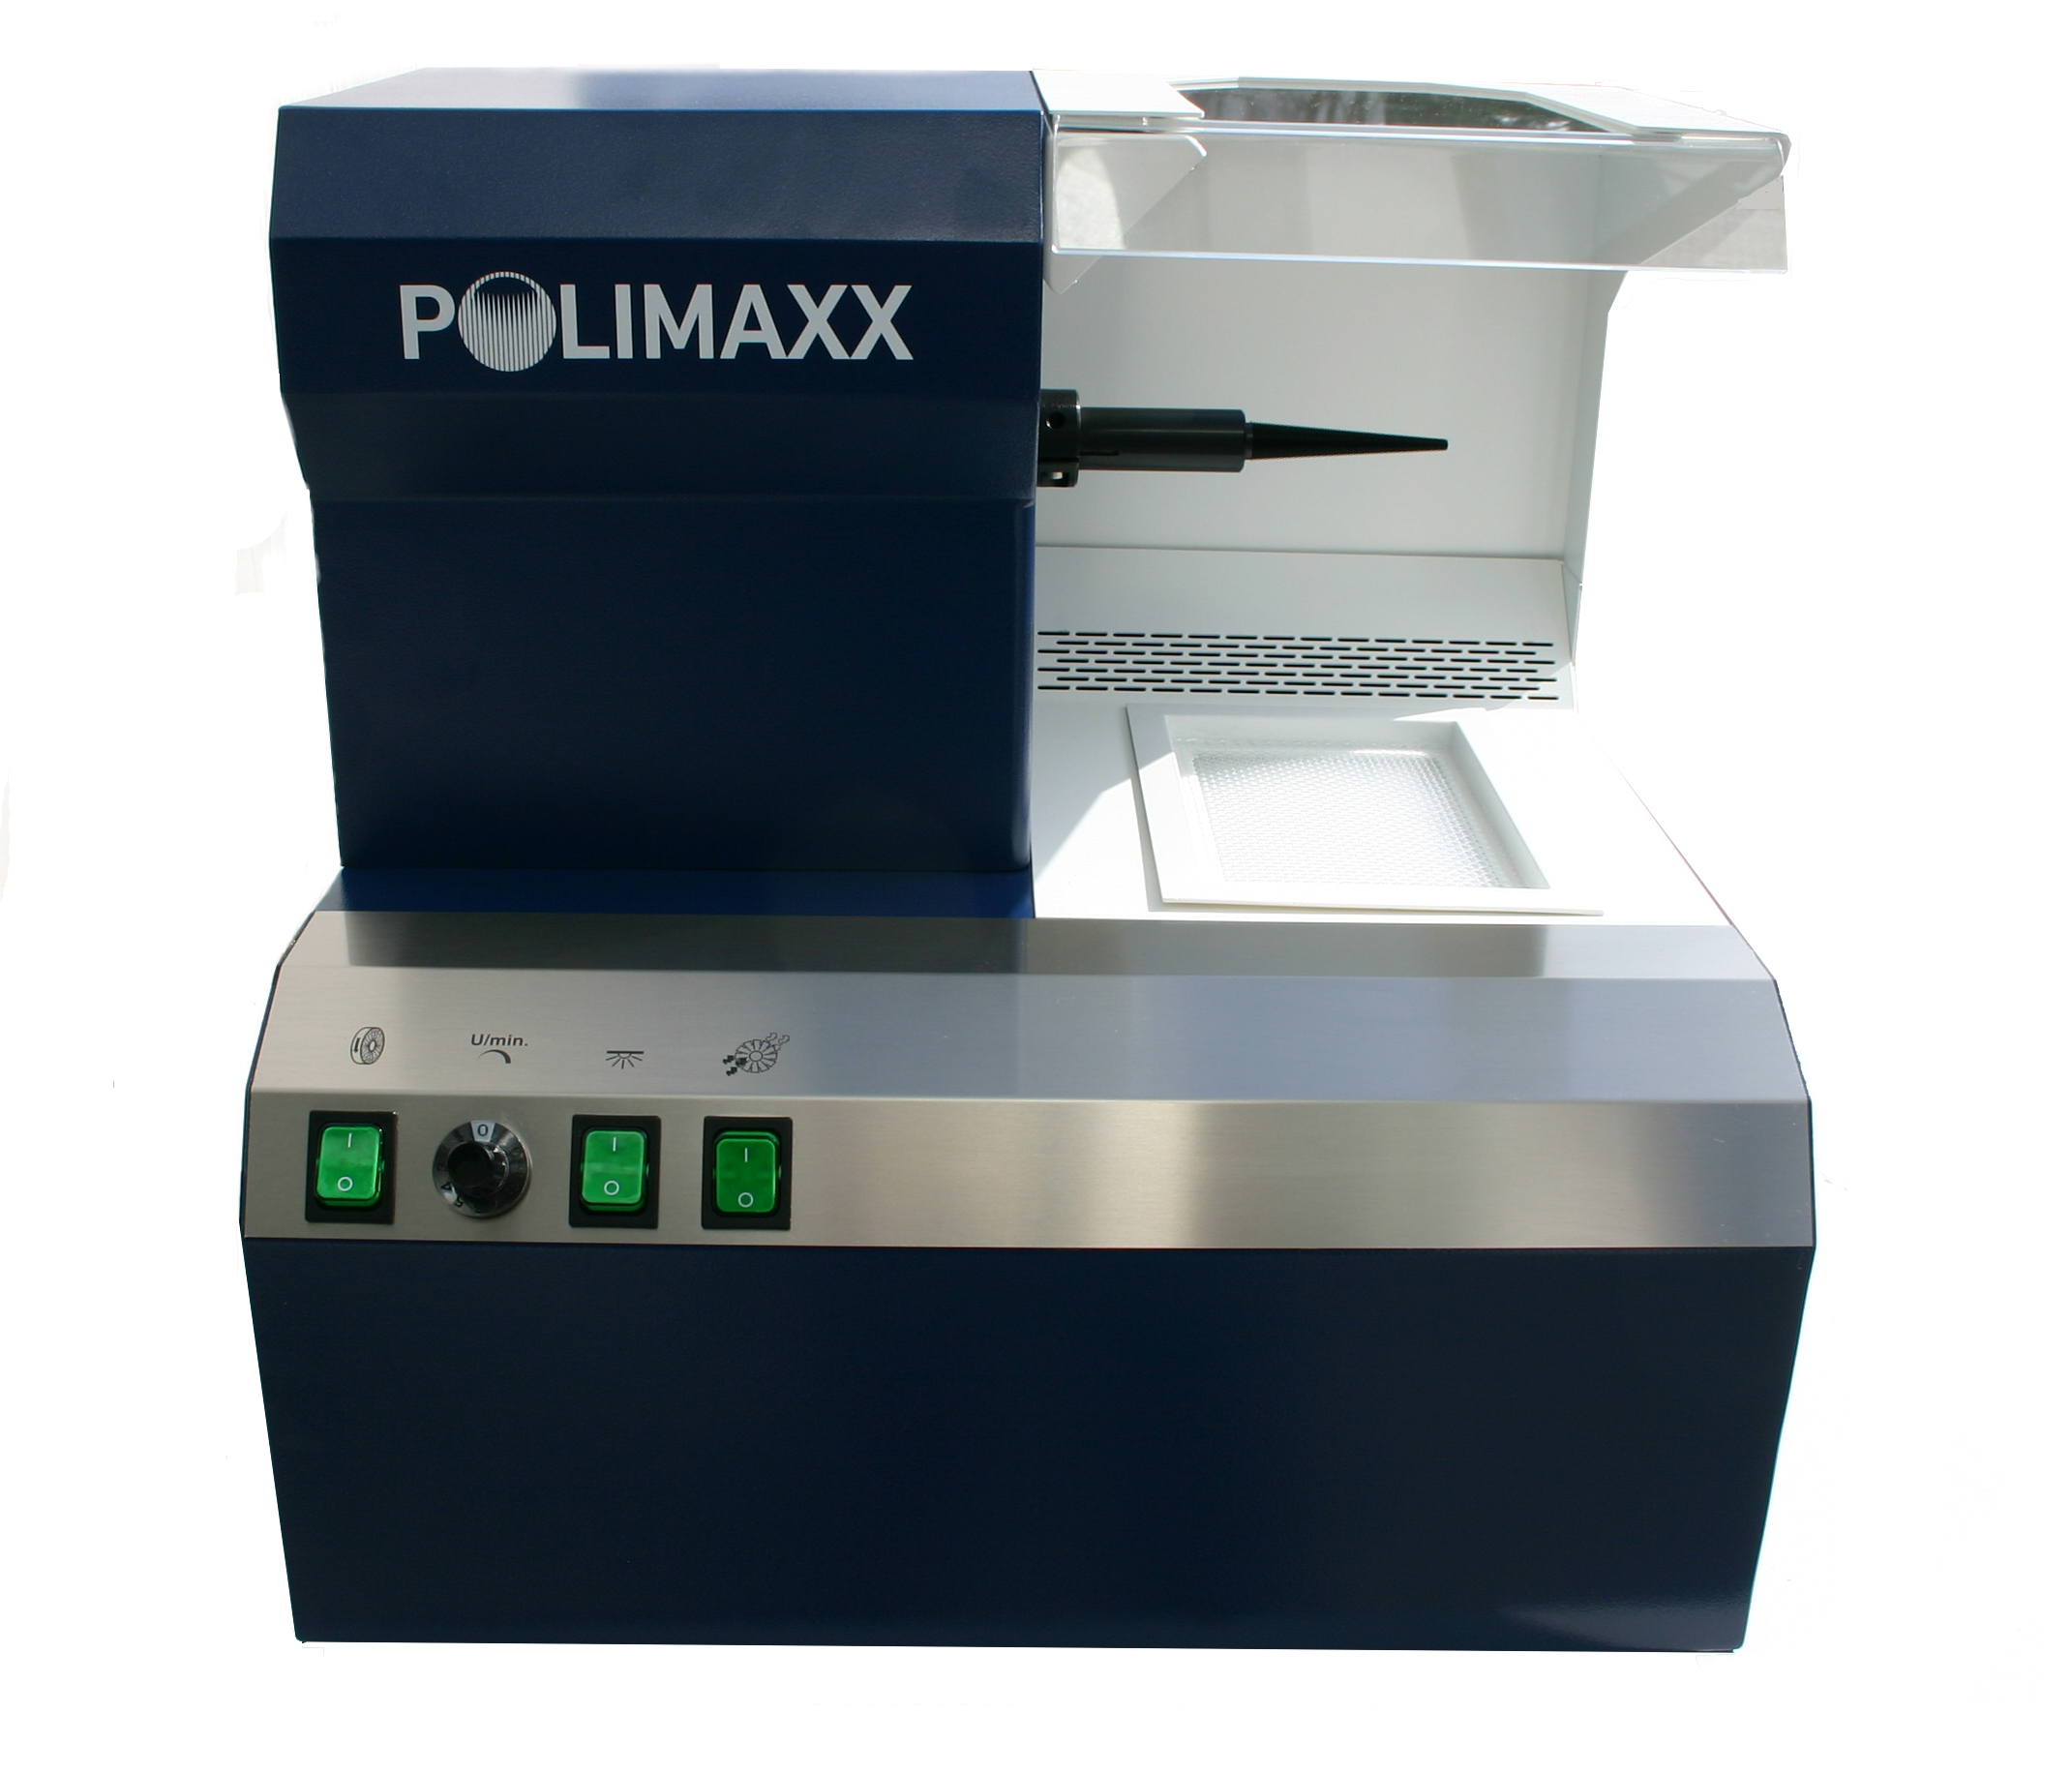 Polishing motor Polimaxx 1